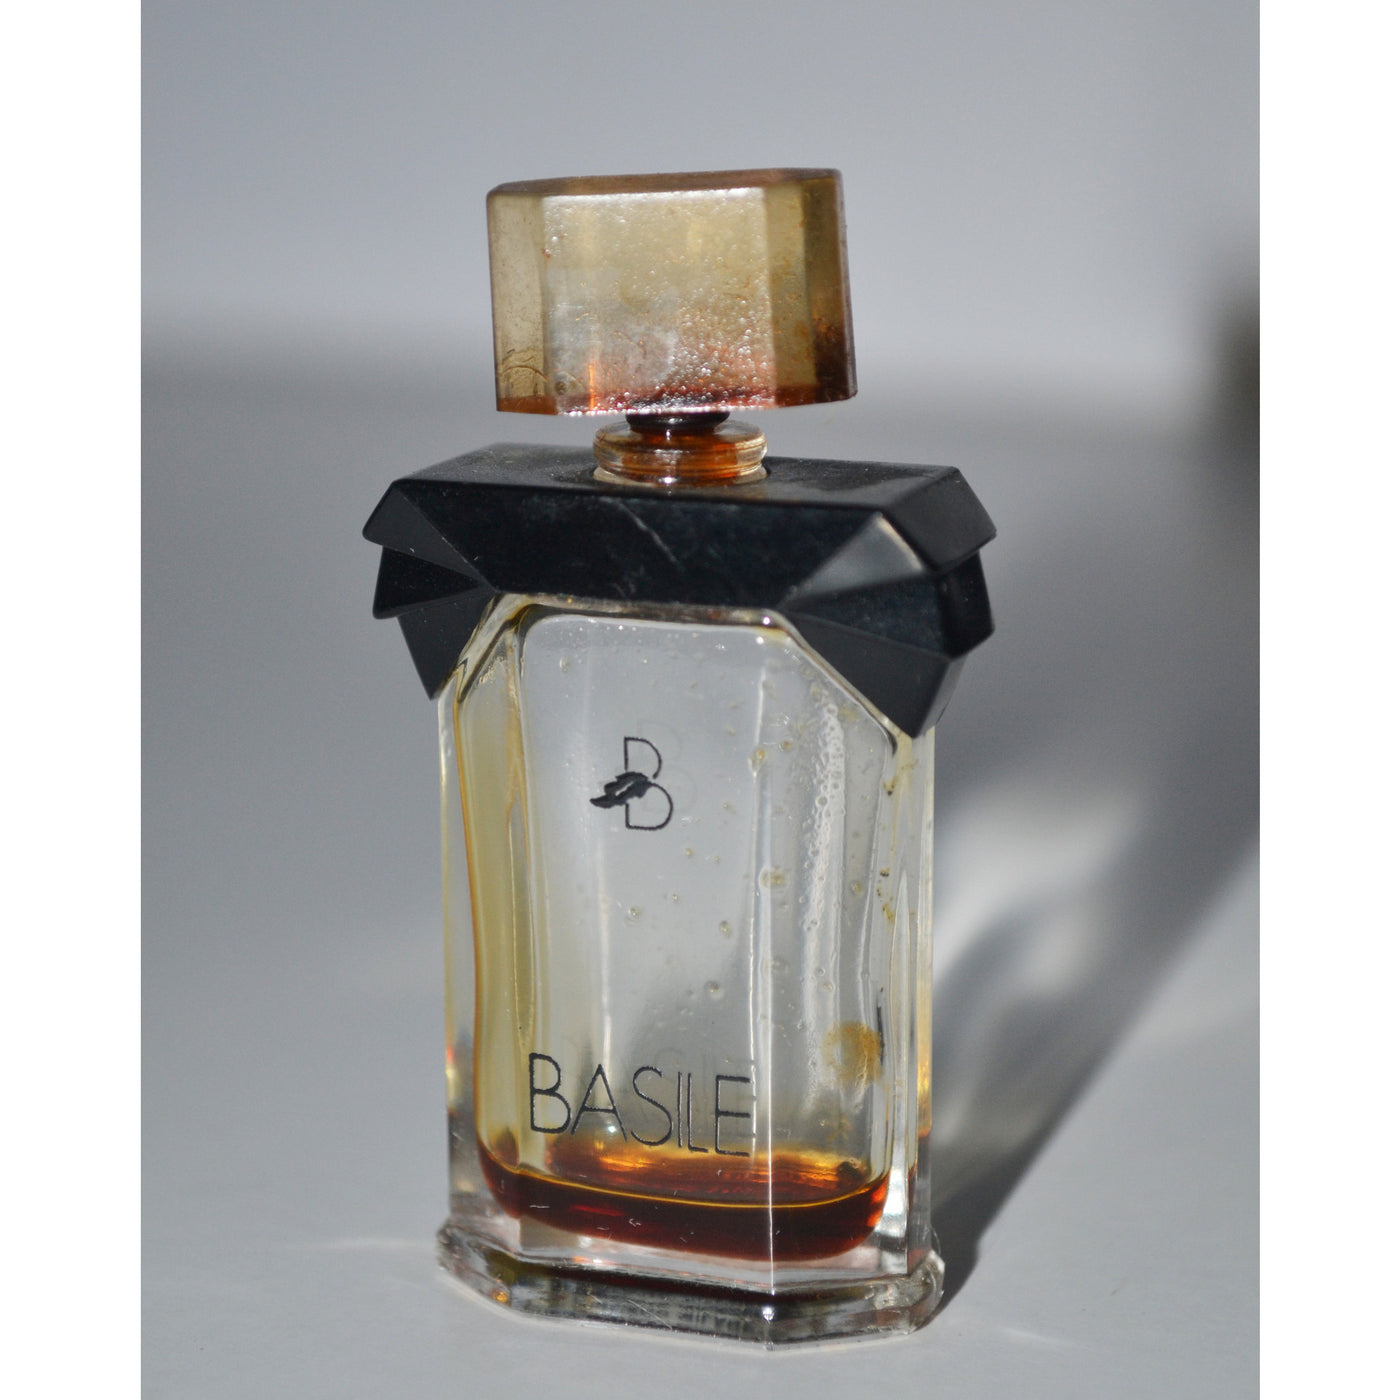 Vintage Basile Perfume Mini